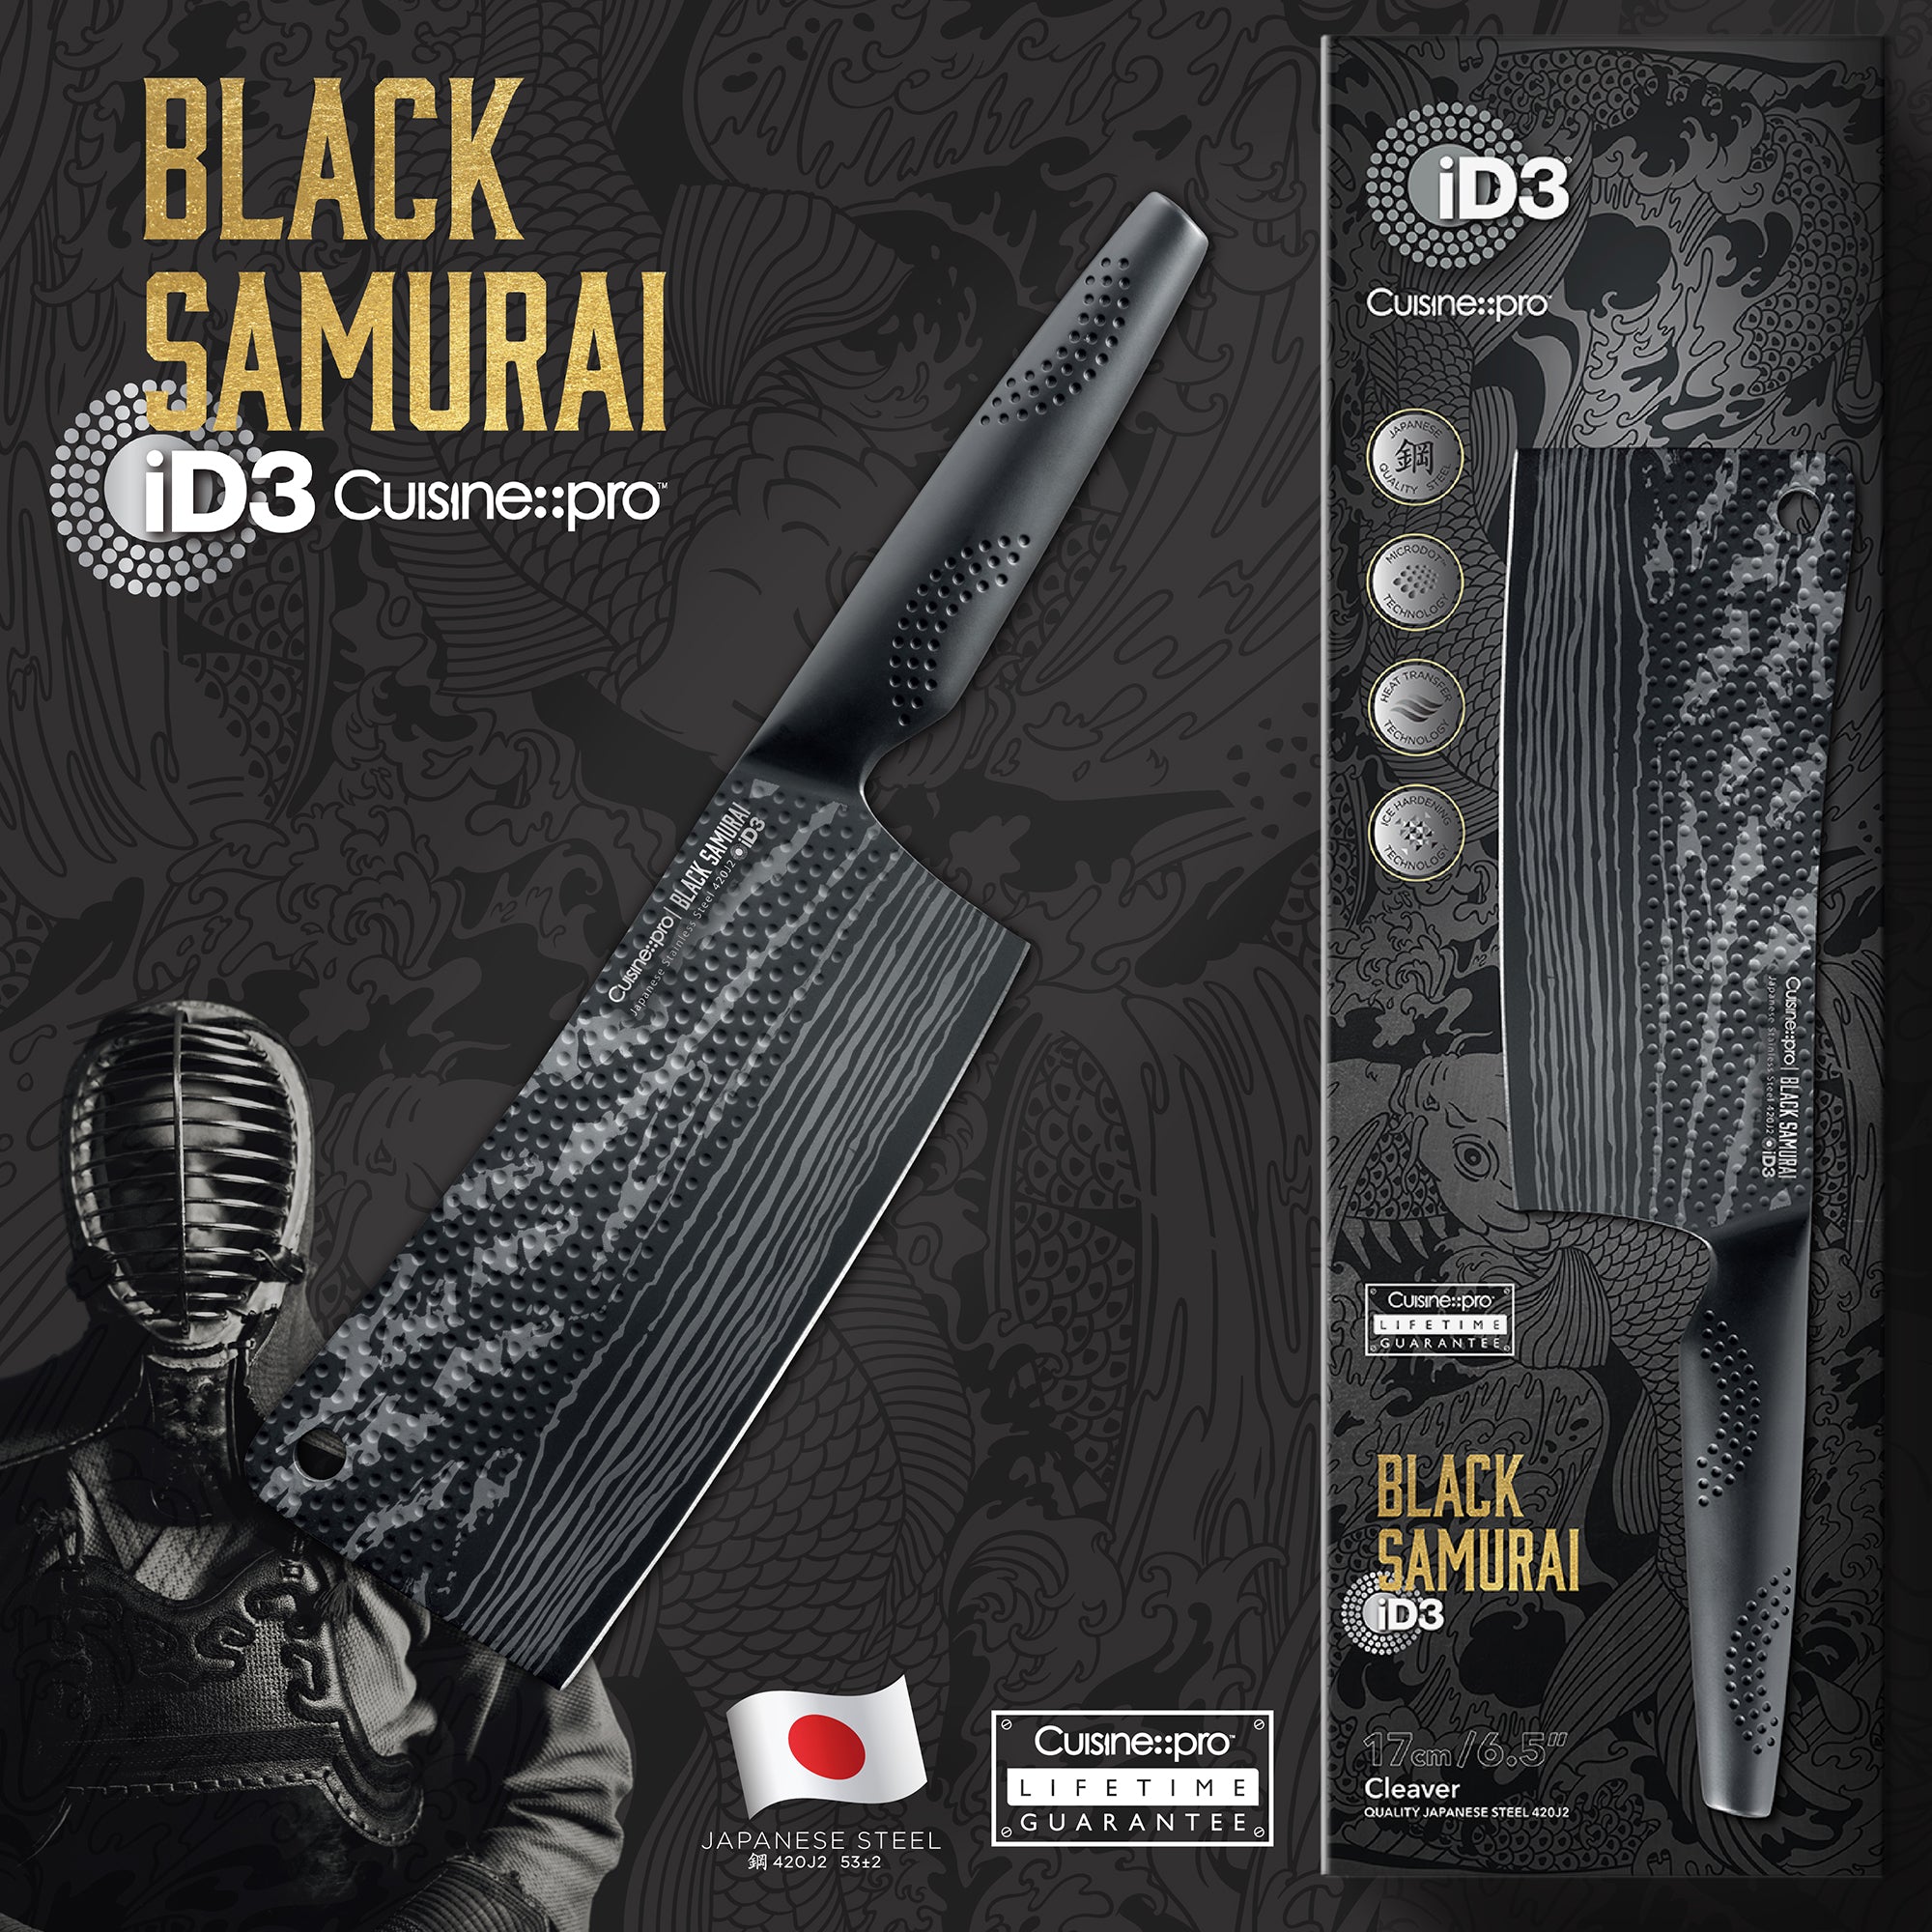 Cuisine::pro ID3 Black Samurai 6.5 in. Cleaver Knife